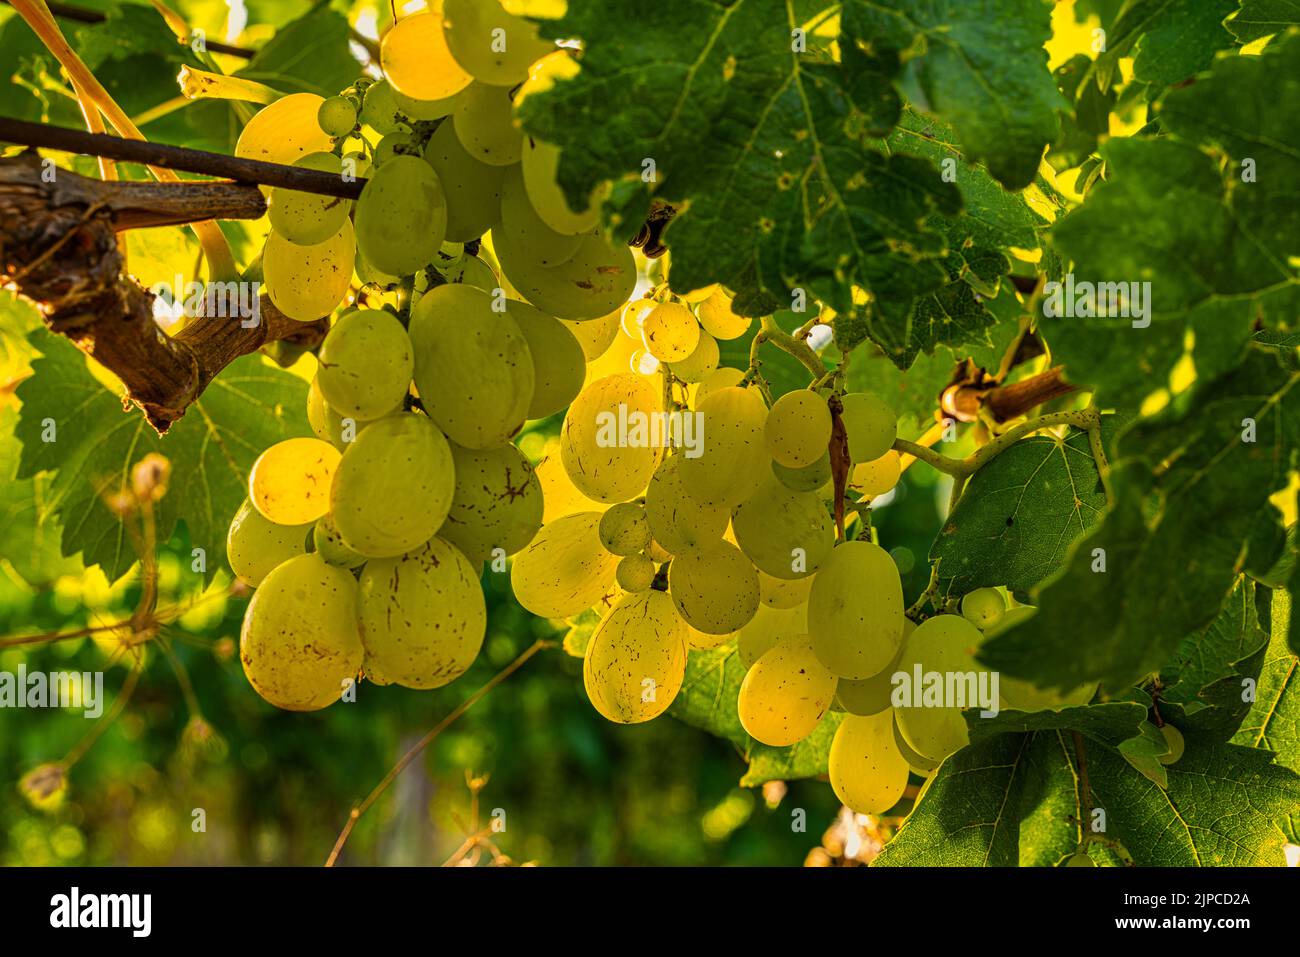 Uva La Italia Blanca con grandes bayas doradas y jugosas, con un sabor decididamente dulce, es una fruta rica en propiedades antioxidantes. Abruzos, Italia Foto de stock